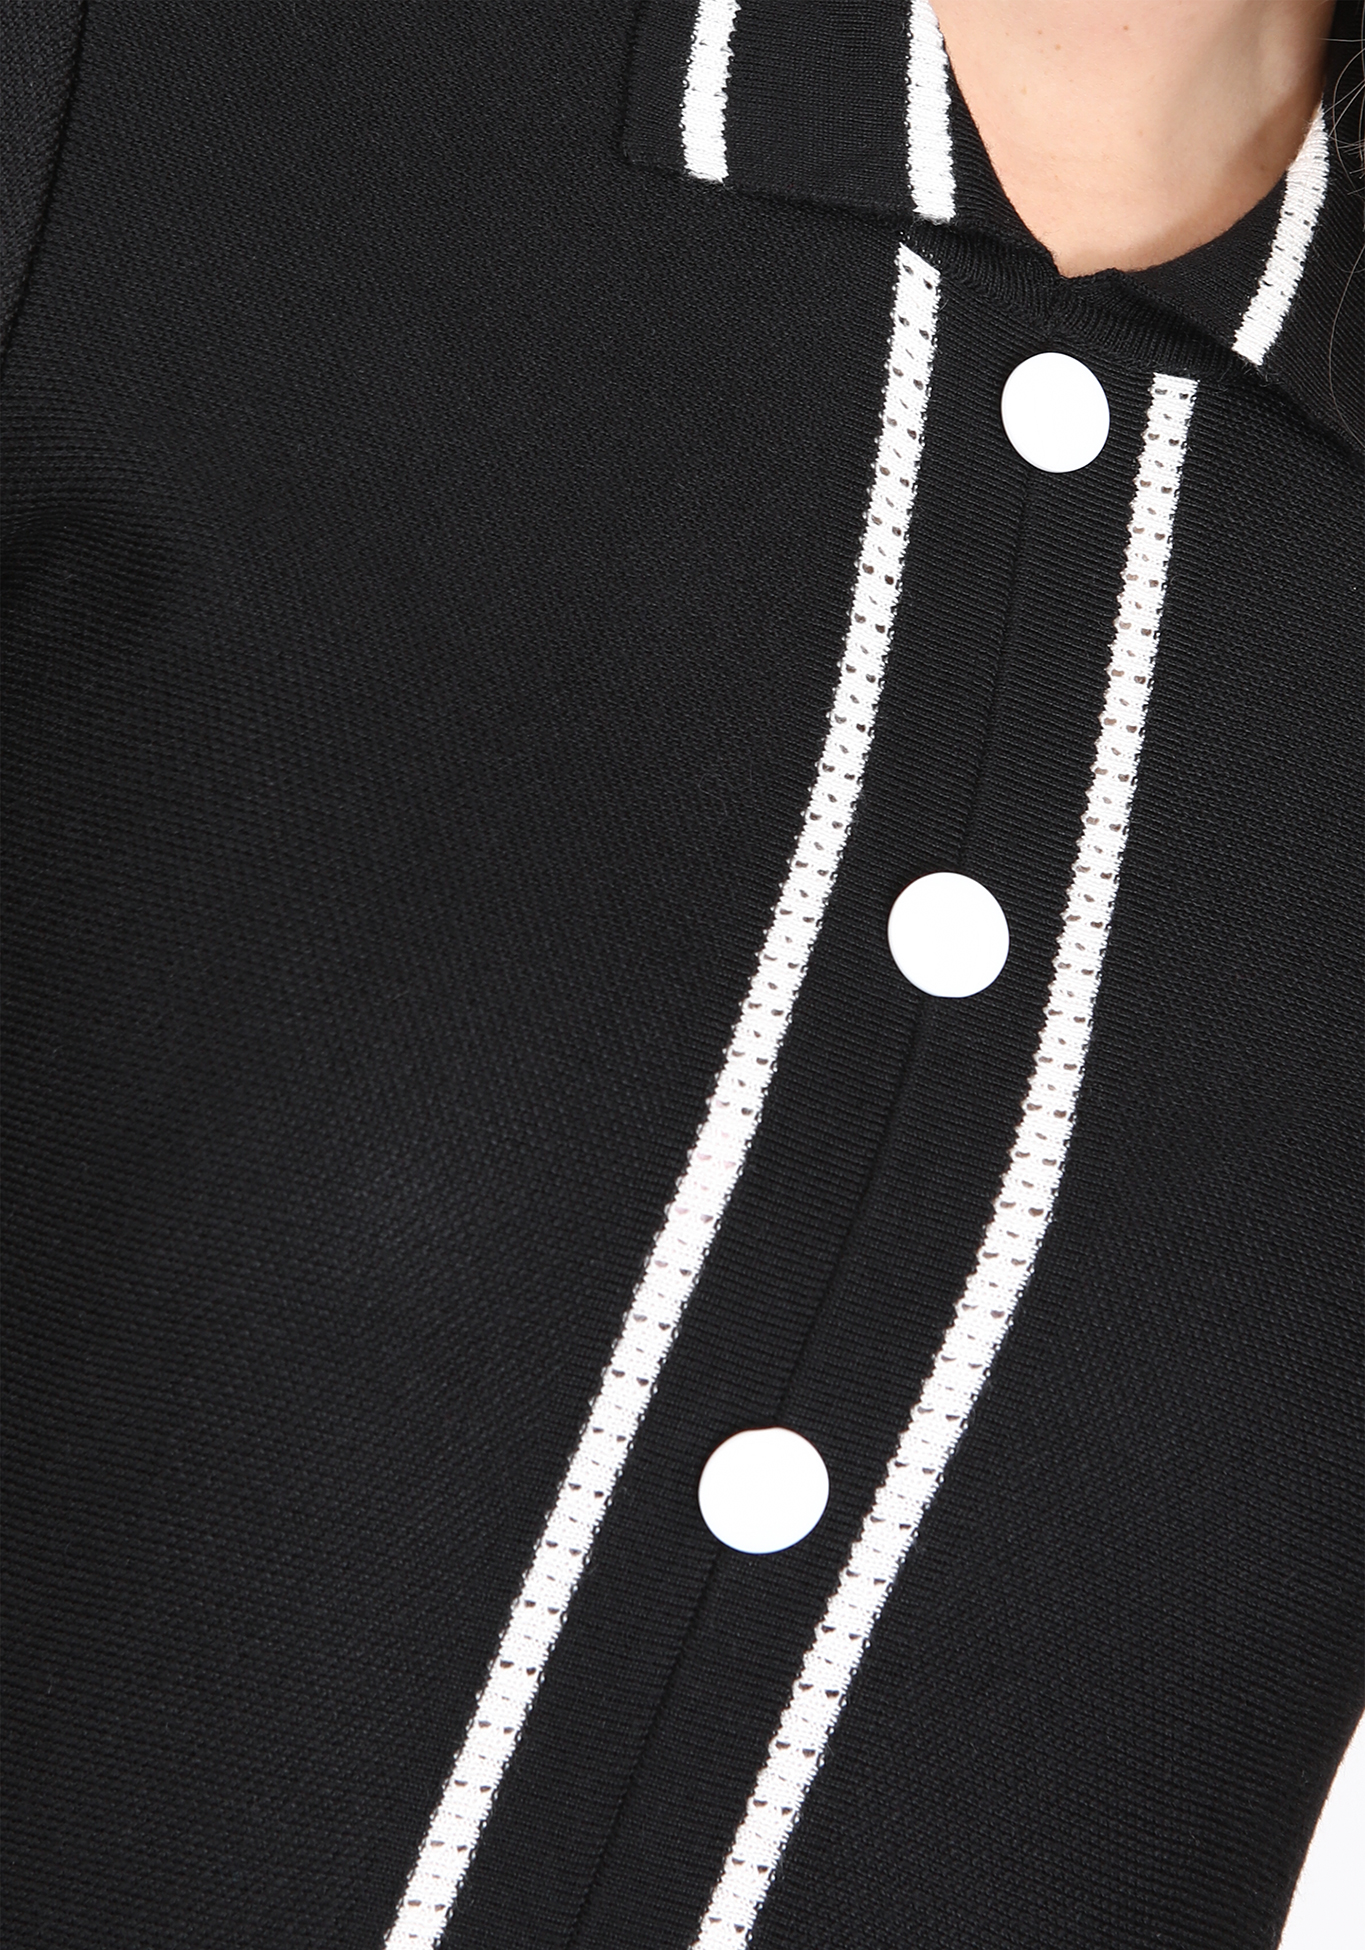 Платье с воротником и полоской по низу Vivawool, размер 48, цвет черный - фото 4